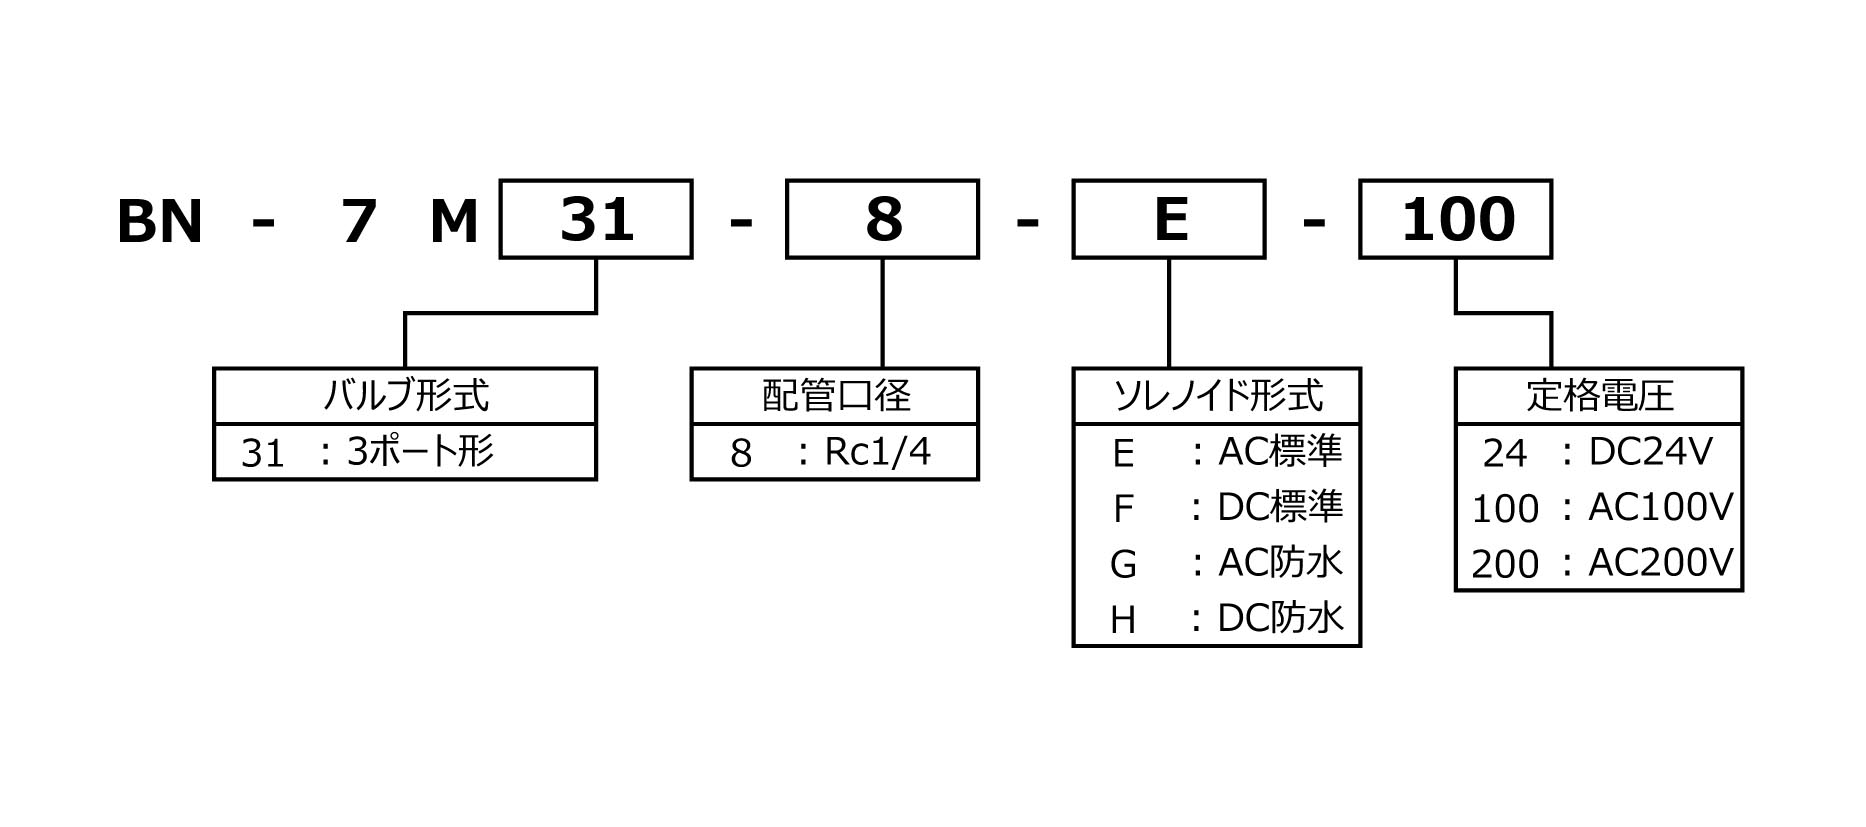 3方向電磁弁 - 日本精器株式会社